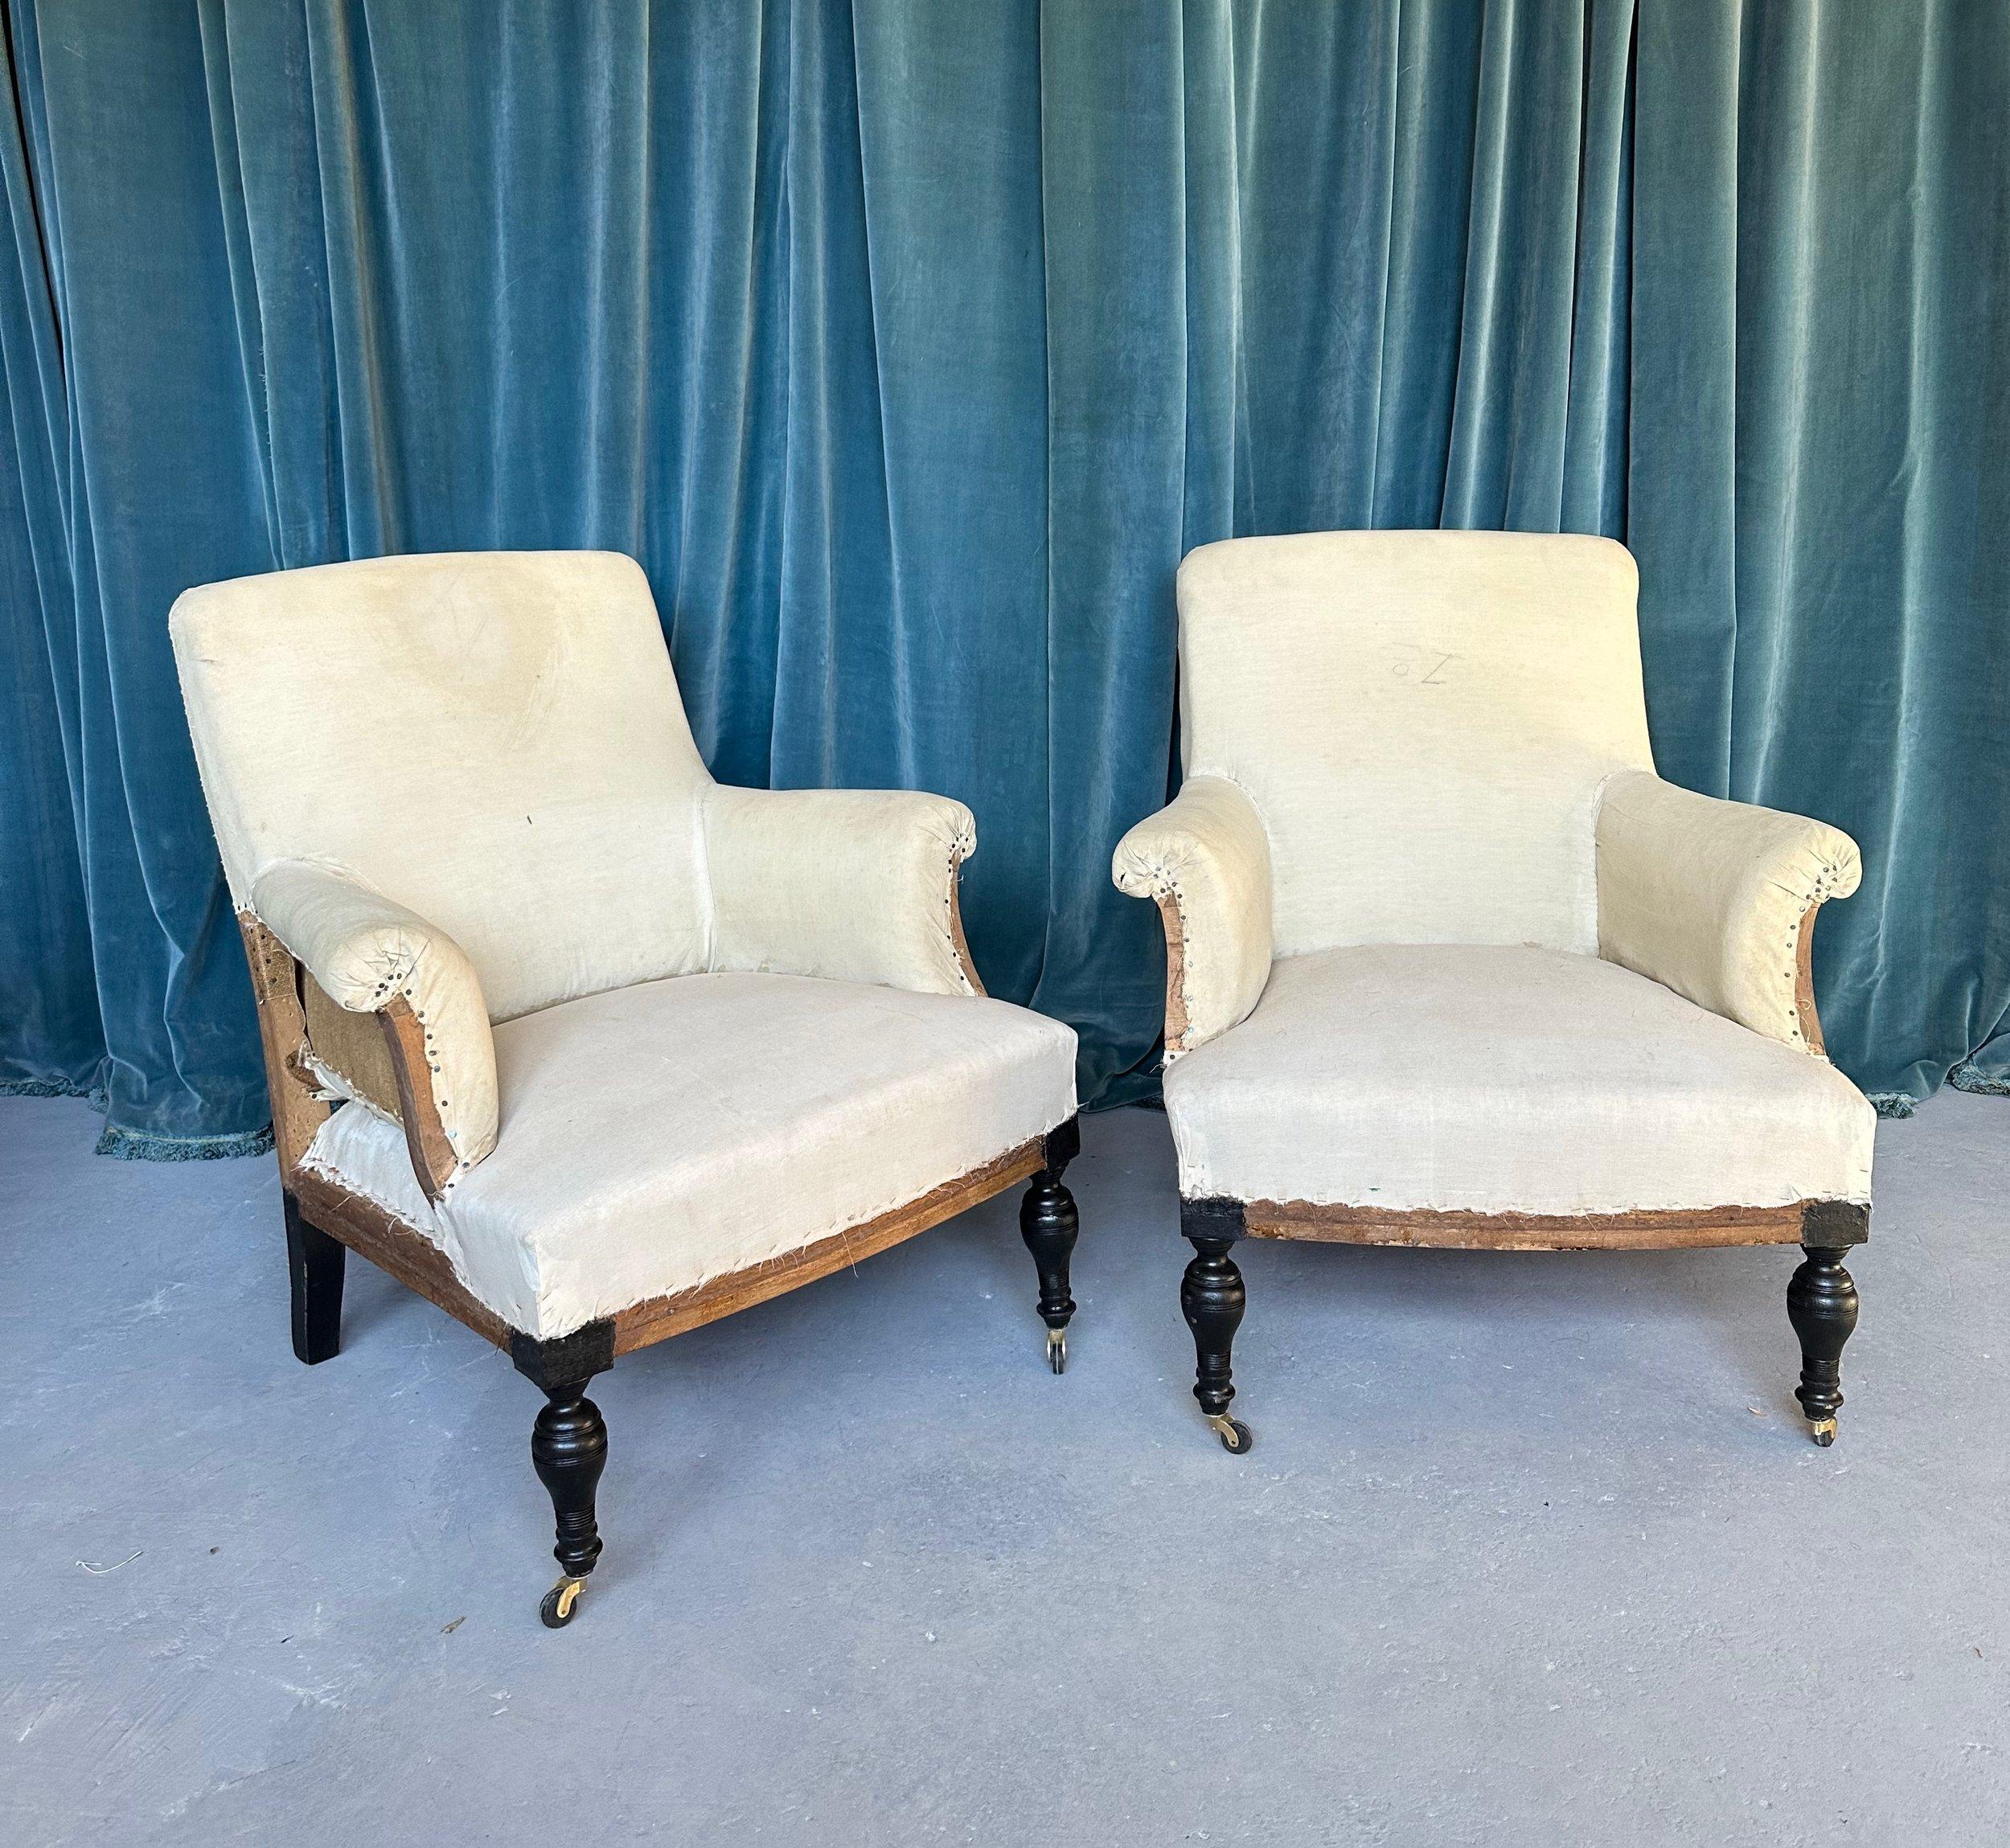 Ein sehr einzigartiges Paar französischer Sessel aus dem 19. Jahrhundert mit geraden, ungetufteten Rückenlehnen und verschnörkelten Armlehnen sowie einfachen, ungetufteten Sitzen. Die Sessel haben ungewöhnlich gedrechselte Beine, die vor kurzem mit